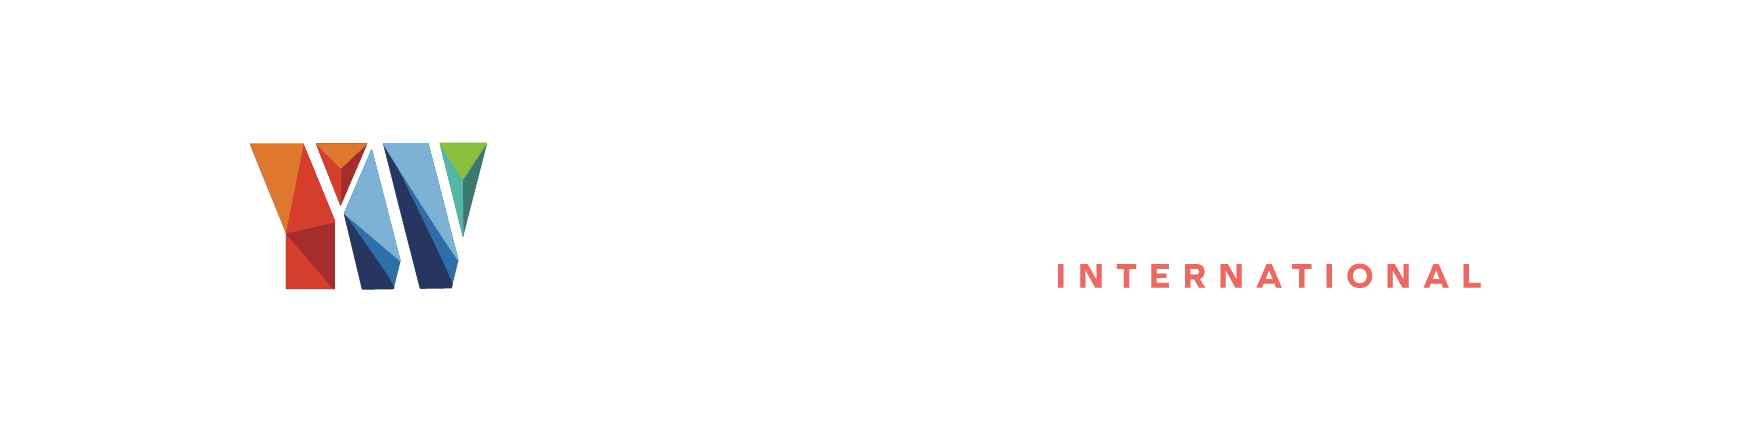 英華地產 Ying Wah Property & Hamptons International